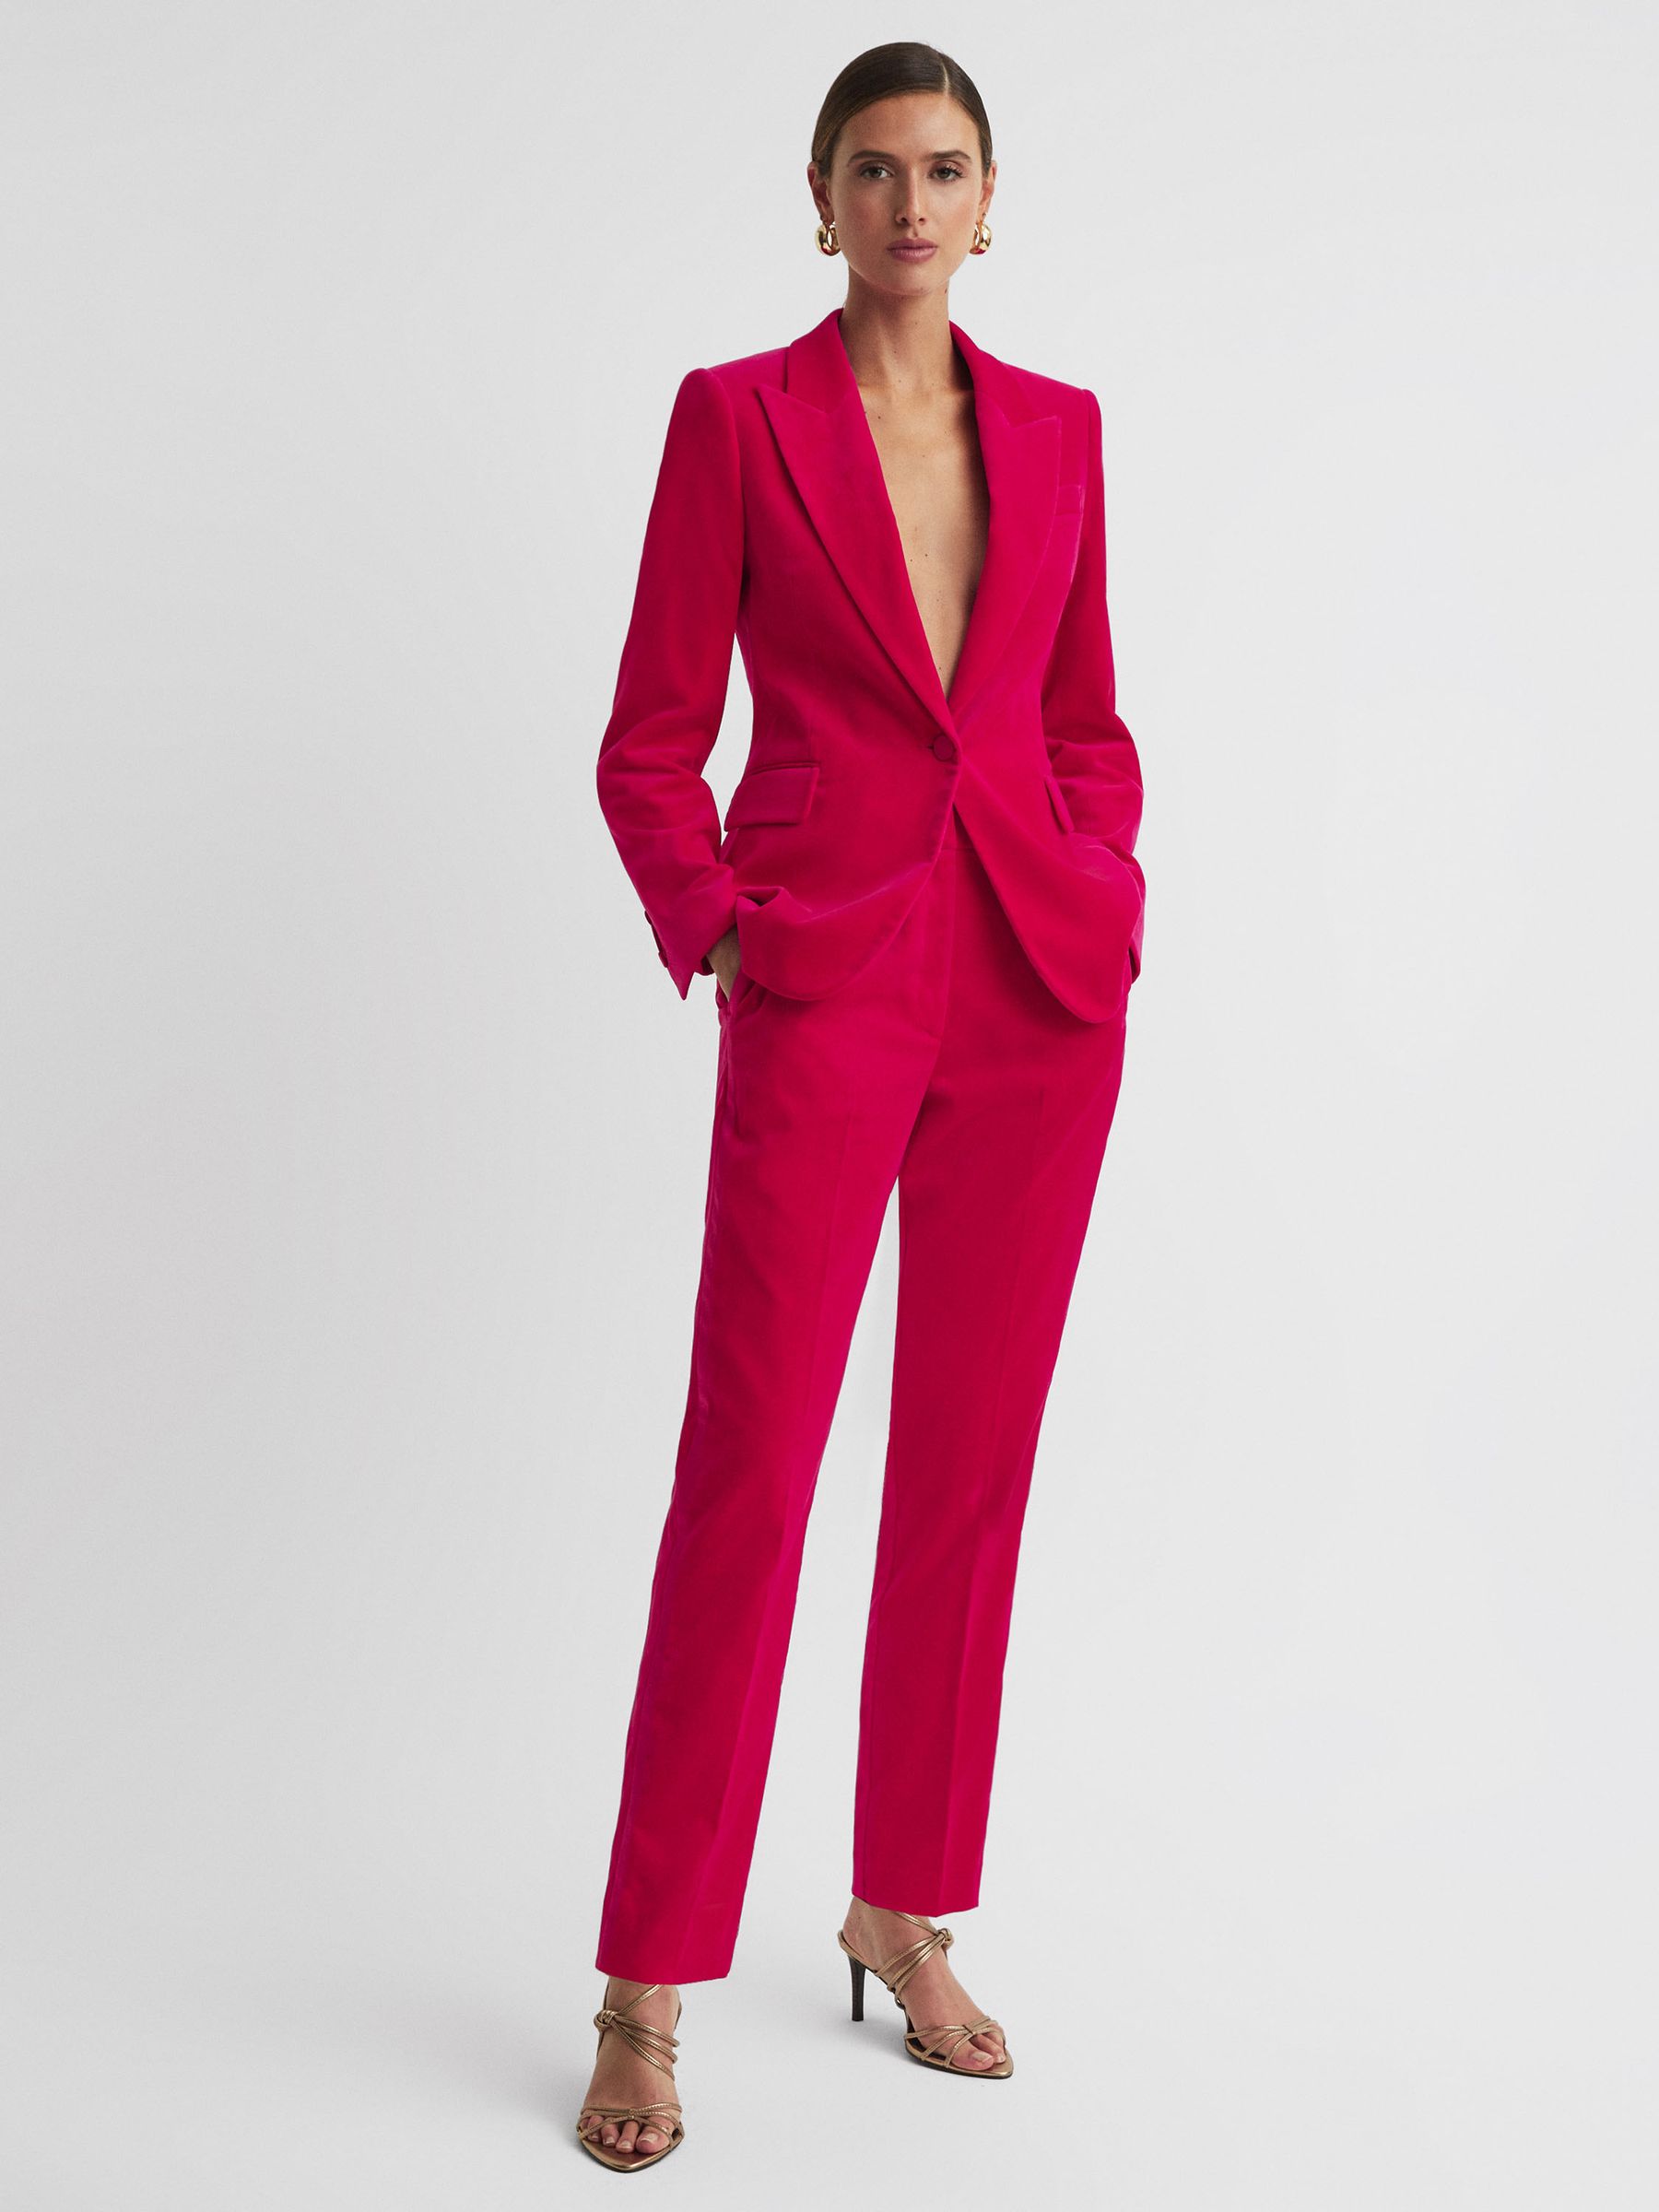 Reiss Rosa Velvet Single Breasted Suit Blazer | REISS USA